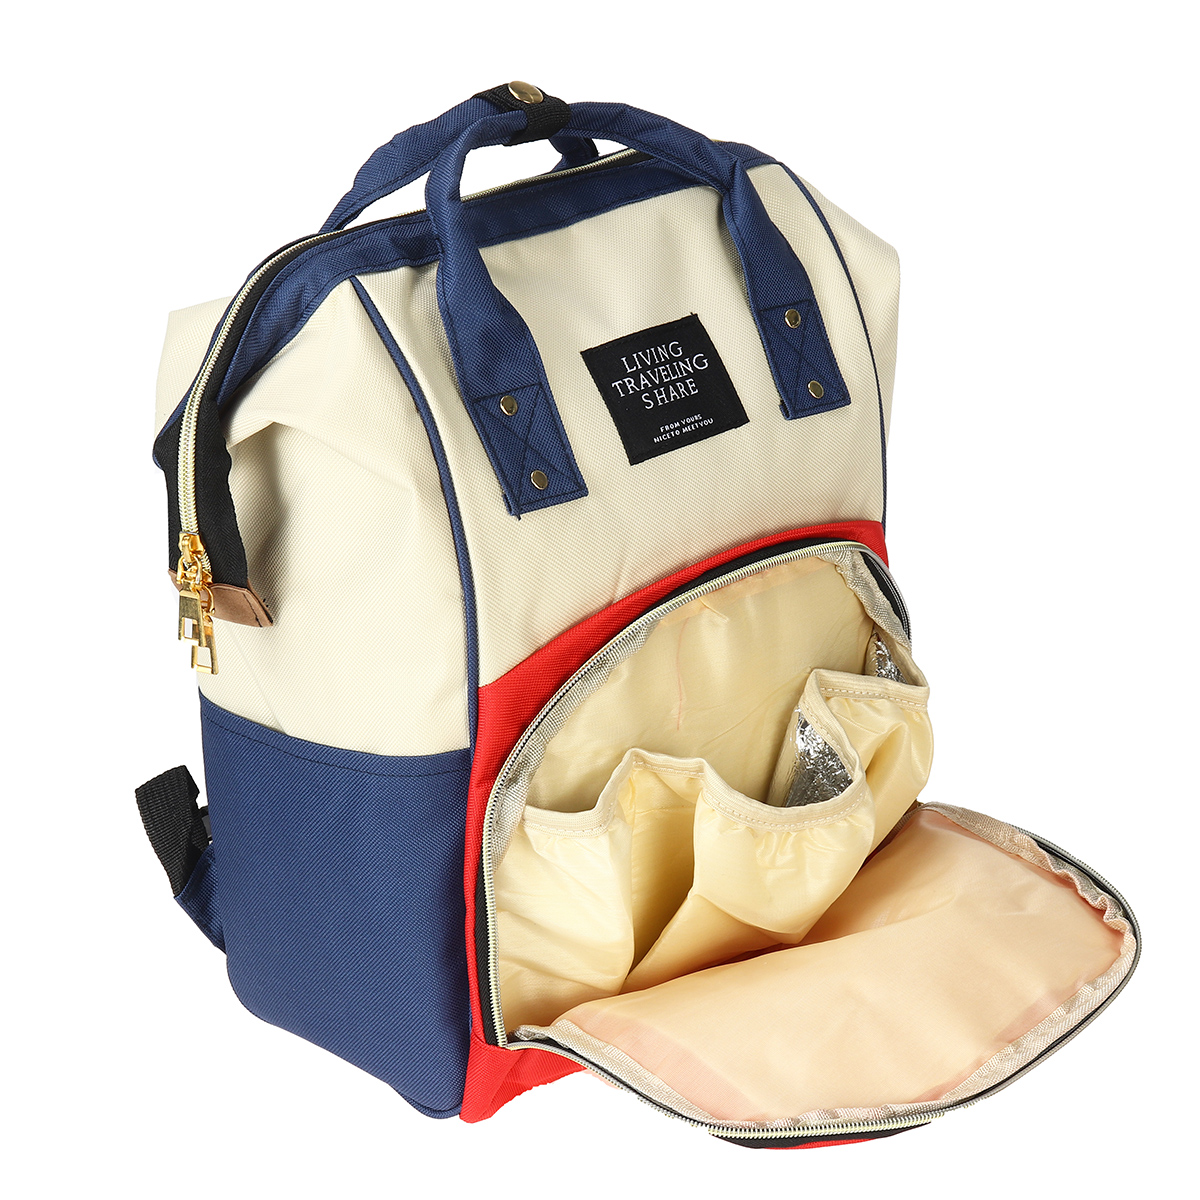 36L-Canvas-Mother-Baby-Bag-Multifunctional-Diaper-Bag-Shoulder-Bag-Backpack-Outdoor-Camping-Travel-1736483-3